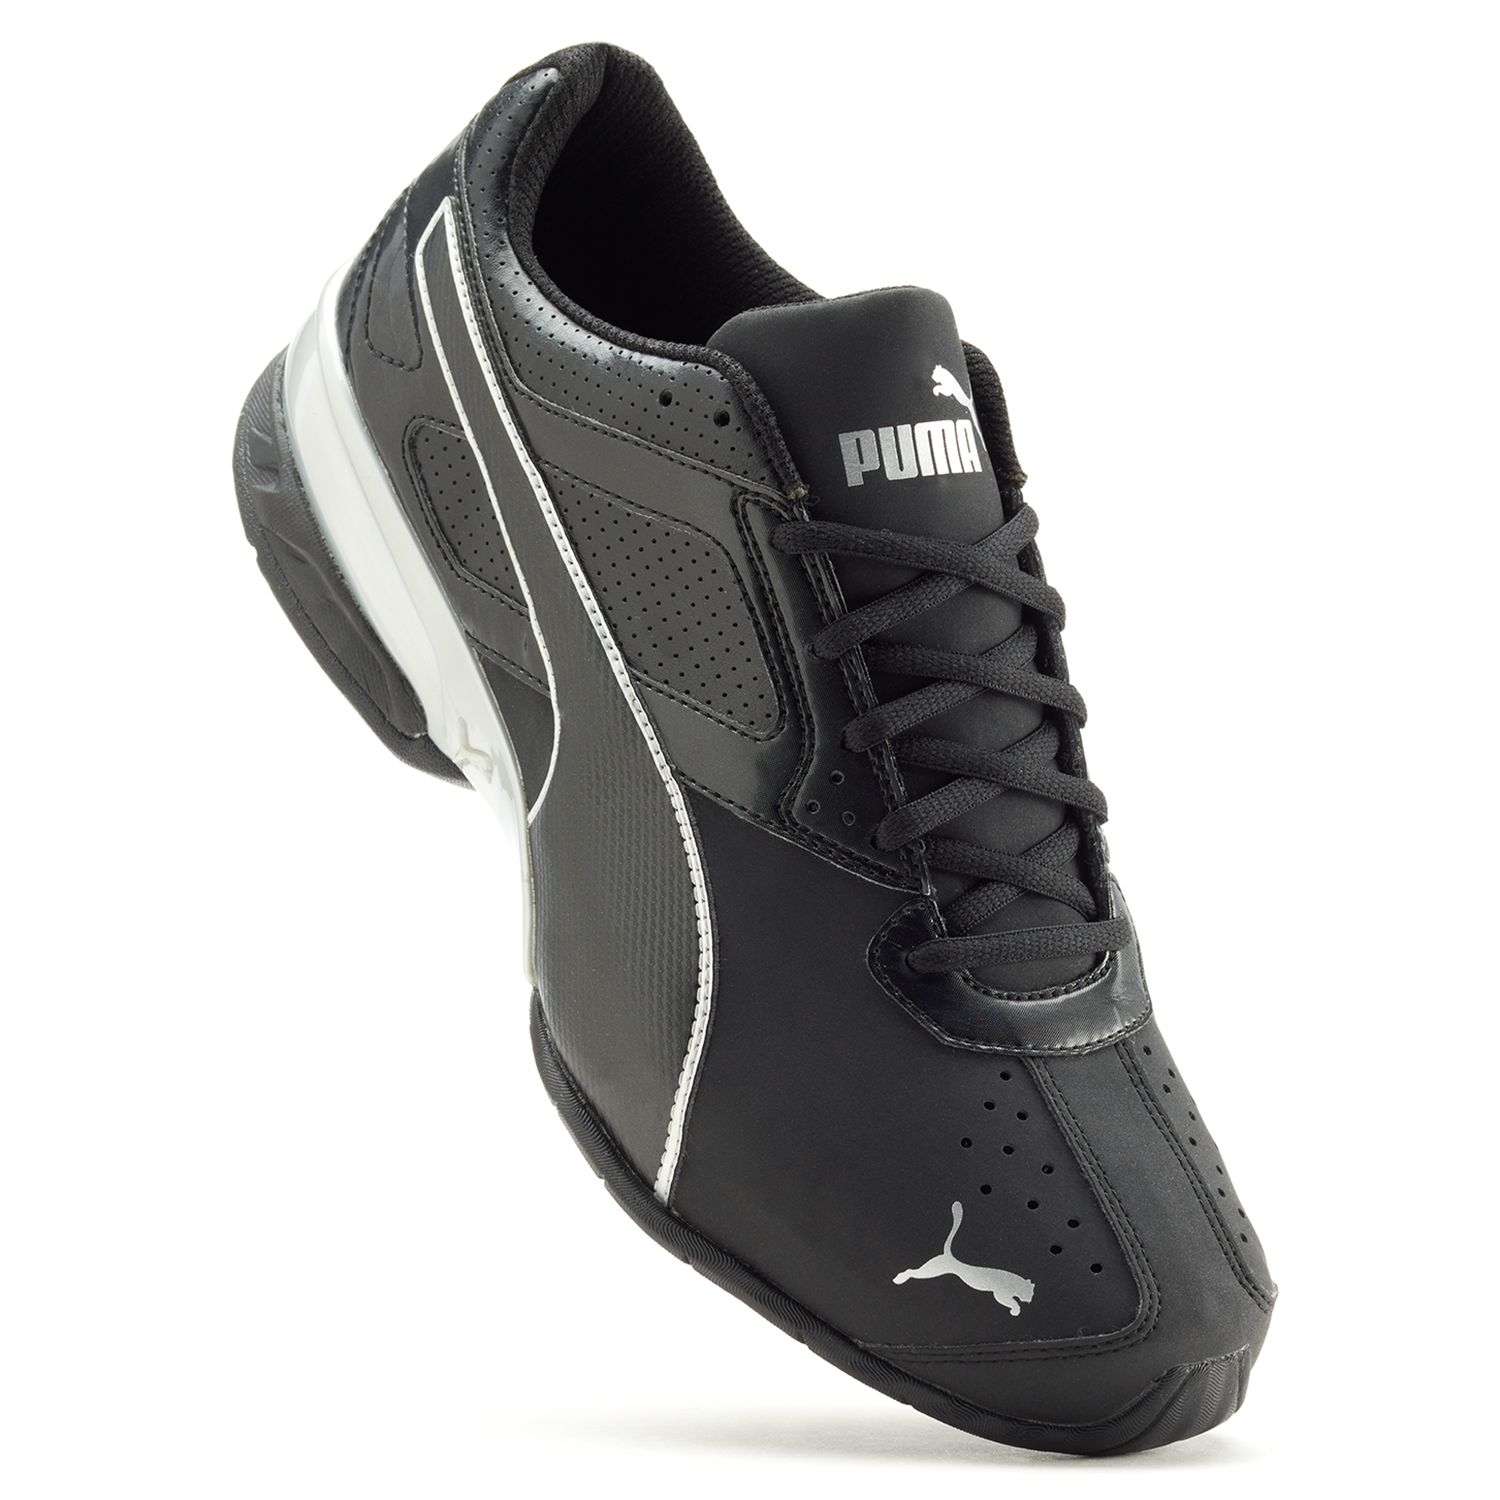 puma tazon 6 fm men's sneakers